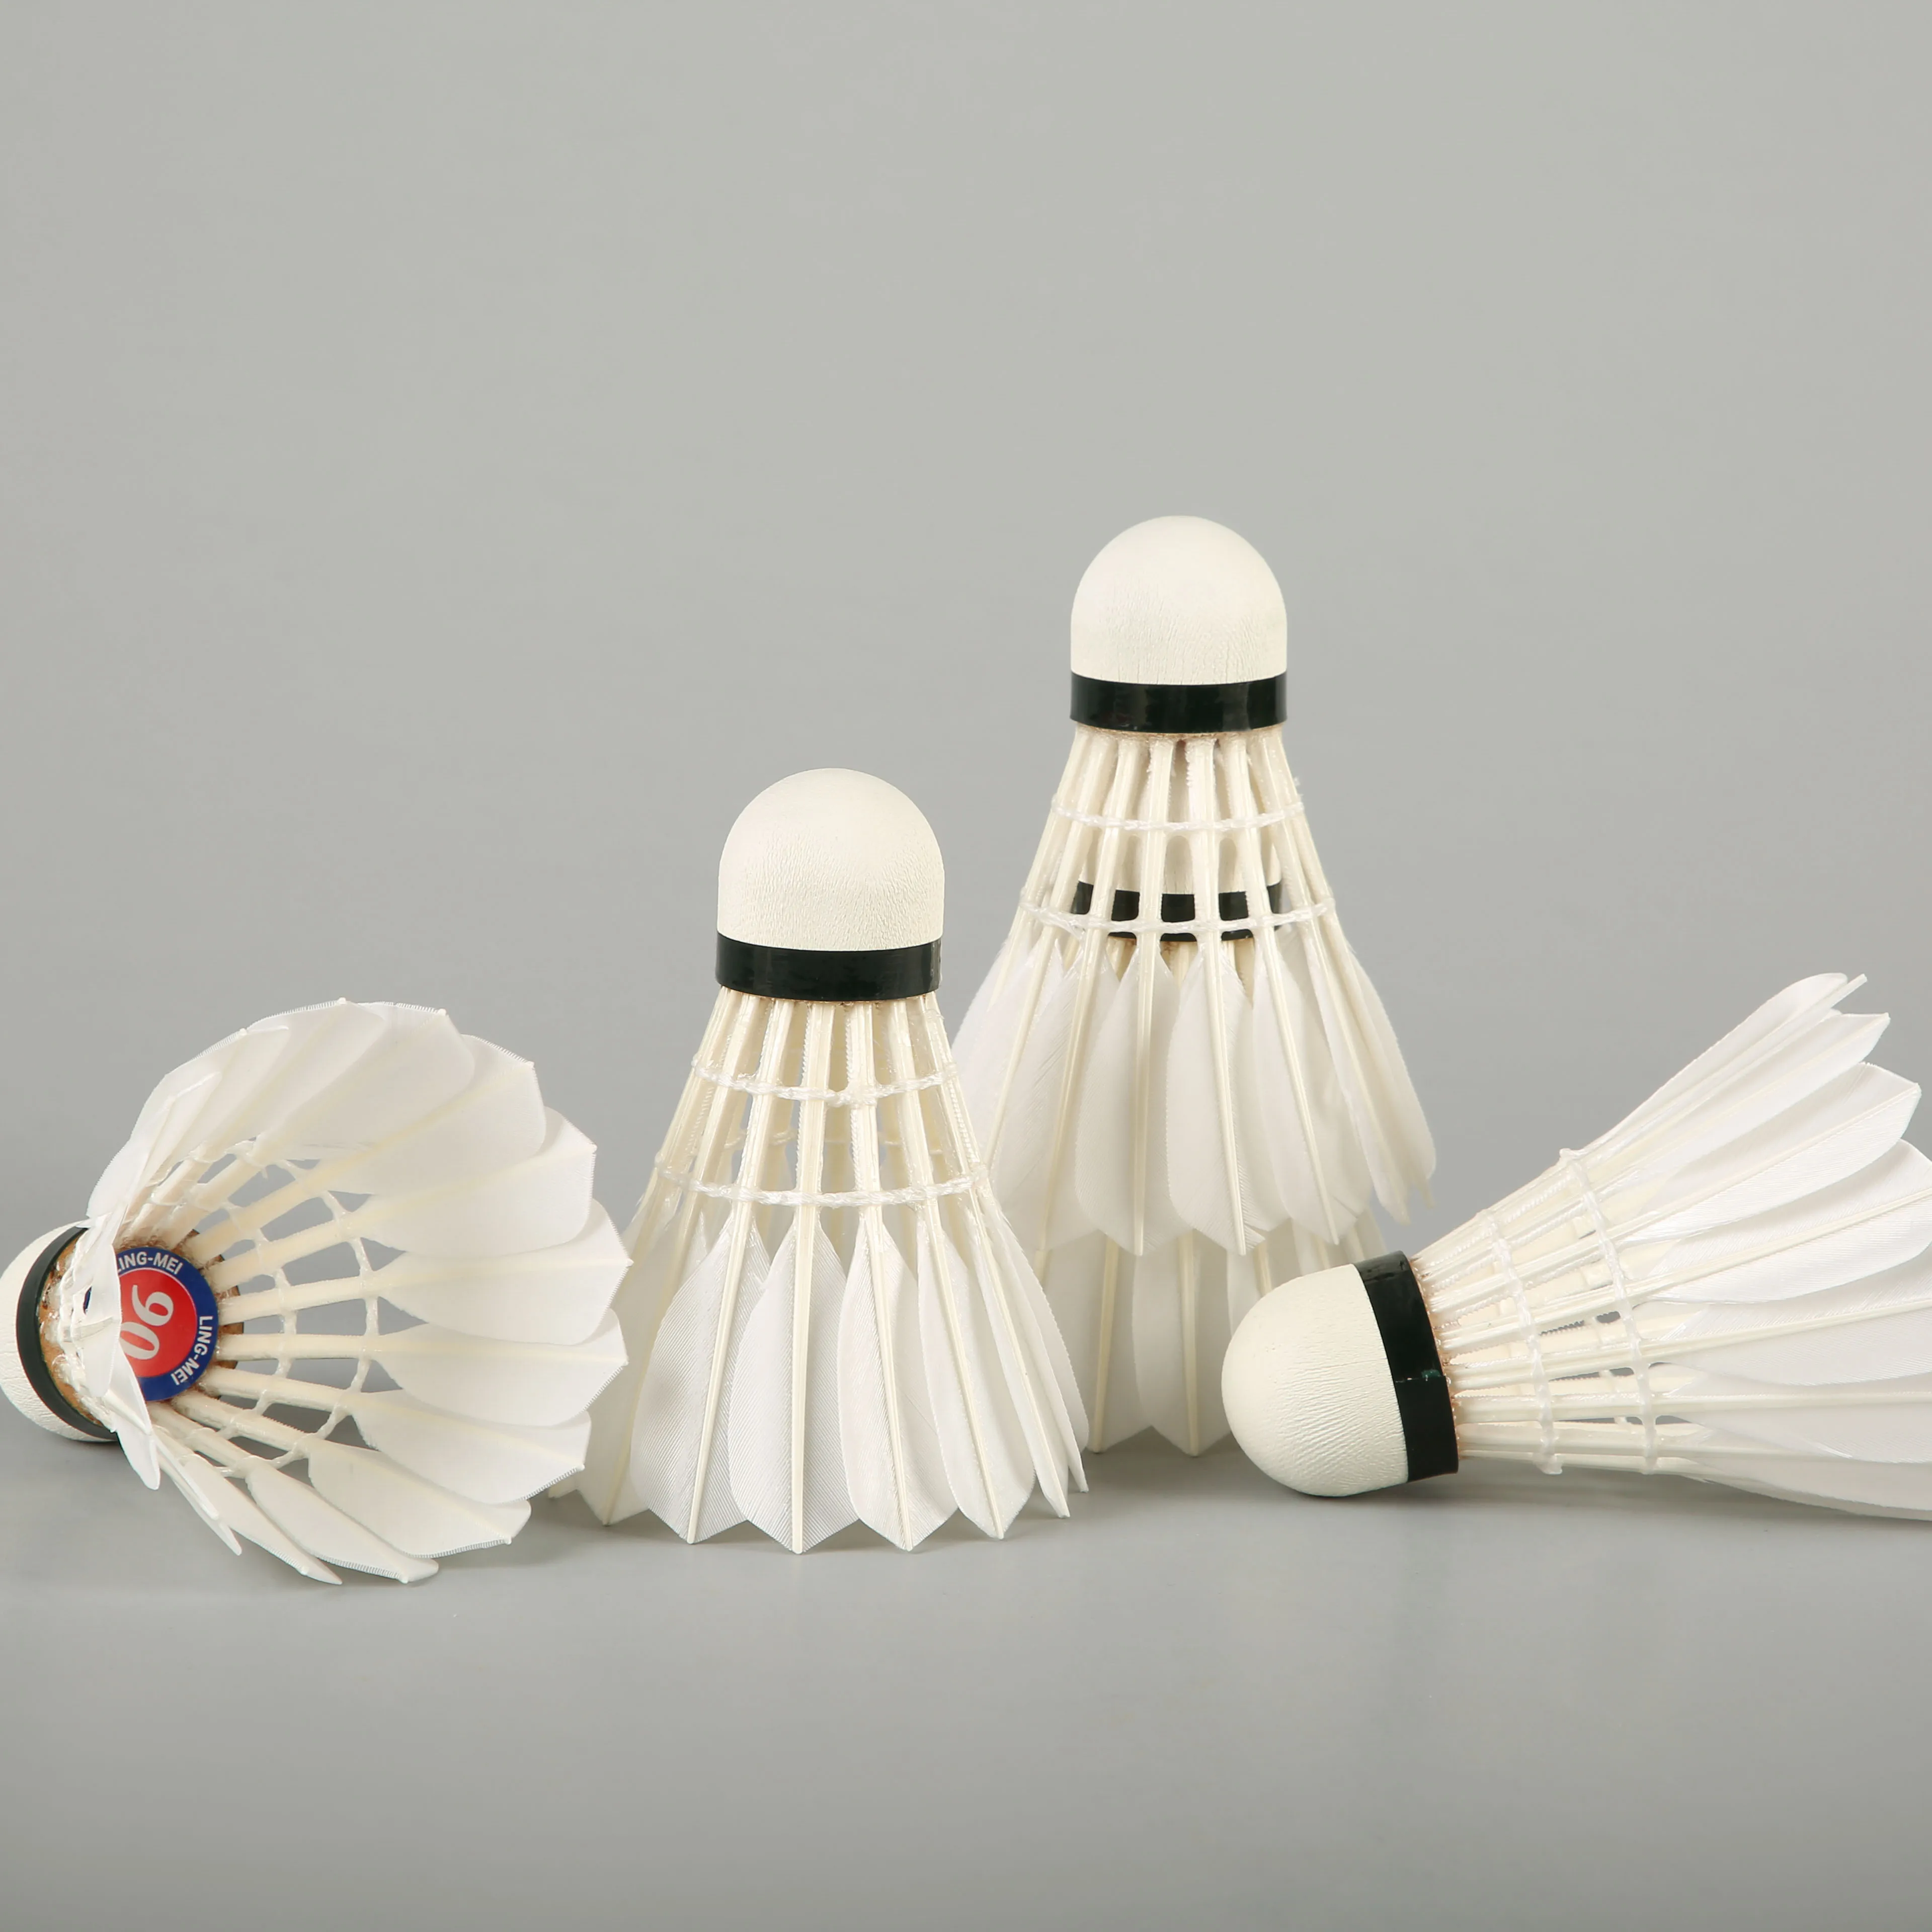 volant de badminton de plume d'oie de qualité dans la marque lingmei